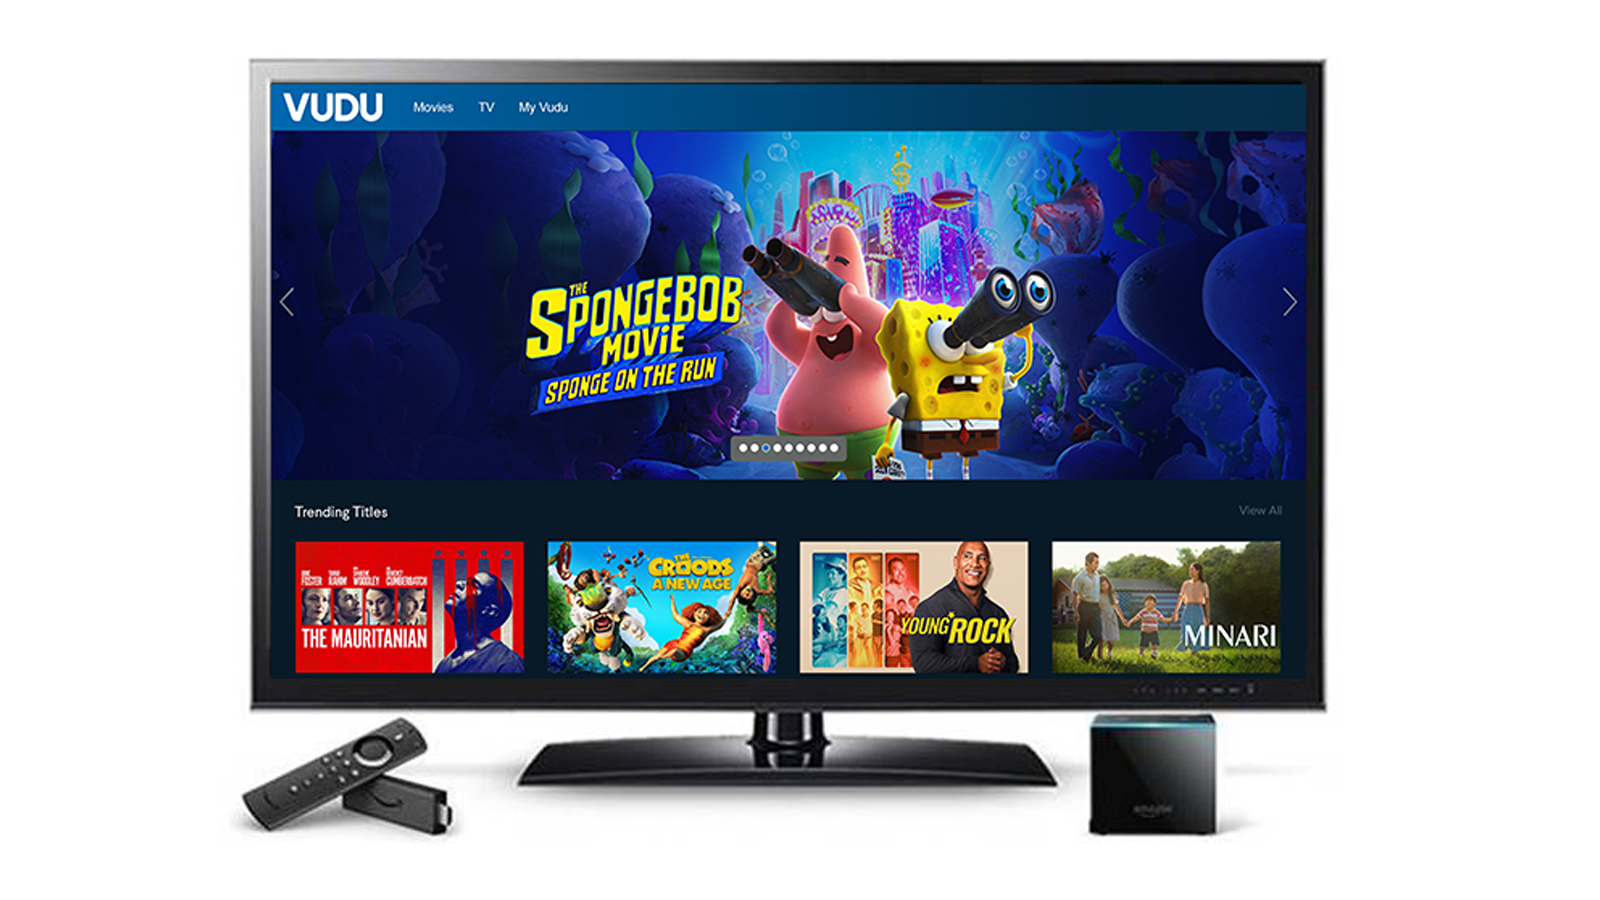 Dịch vụ phát trực tuyến của Vudu sẽ ra mắt Amazon Fire TV với hỗ trợ 4K HDR